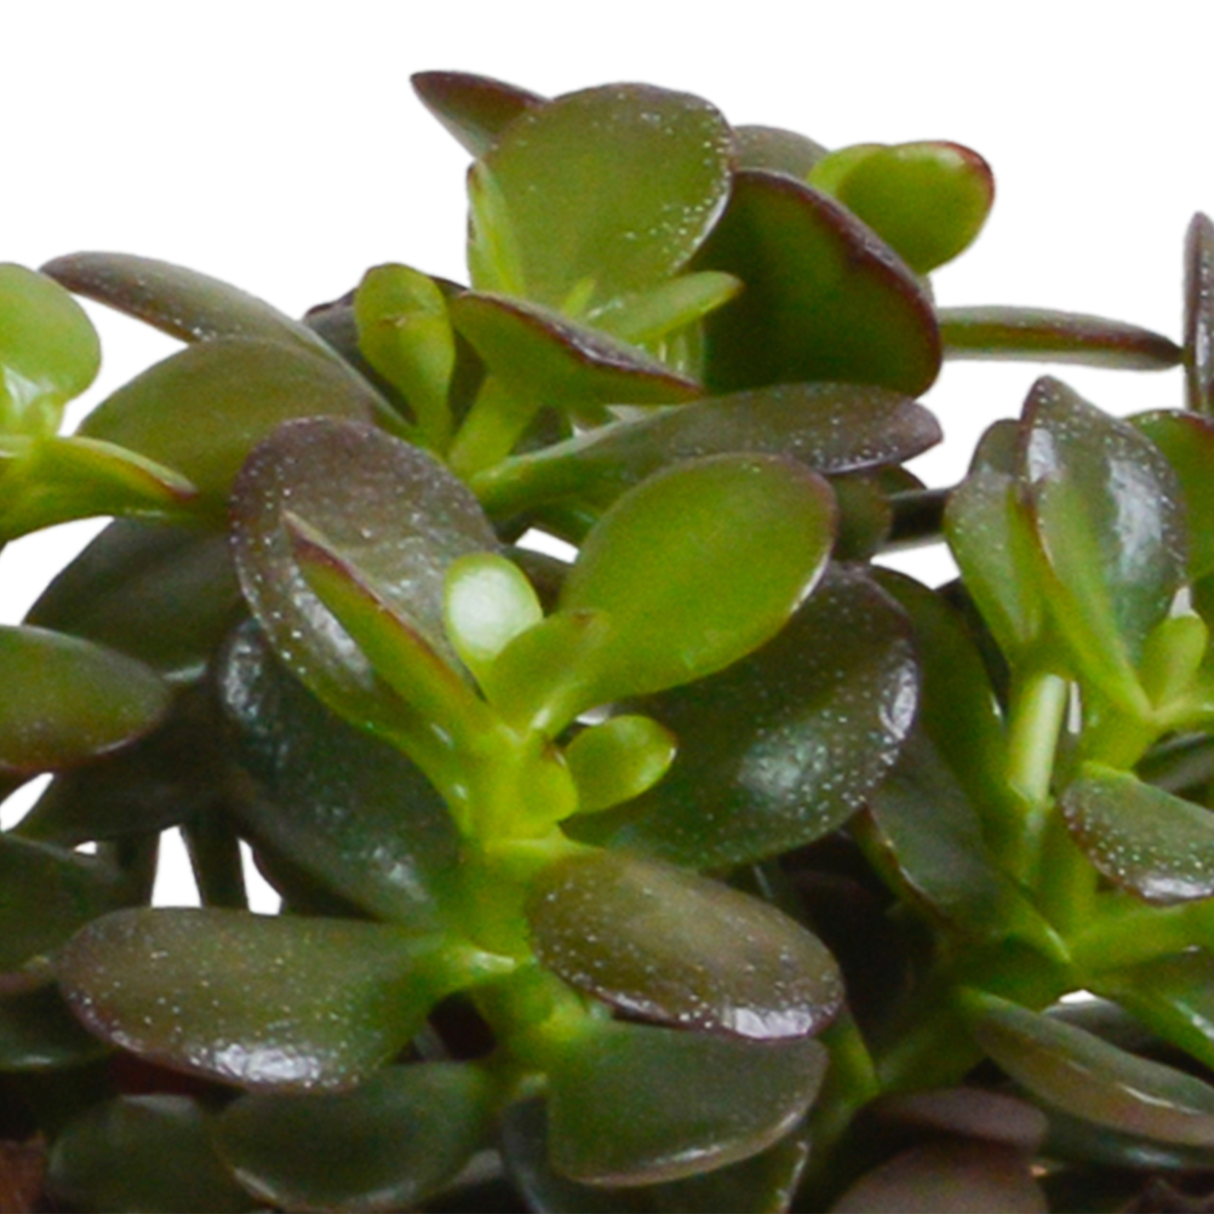 Scatola Crassula e le sue fioriere bianche - Set di 3 piante, h21cm